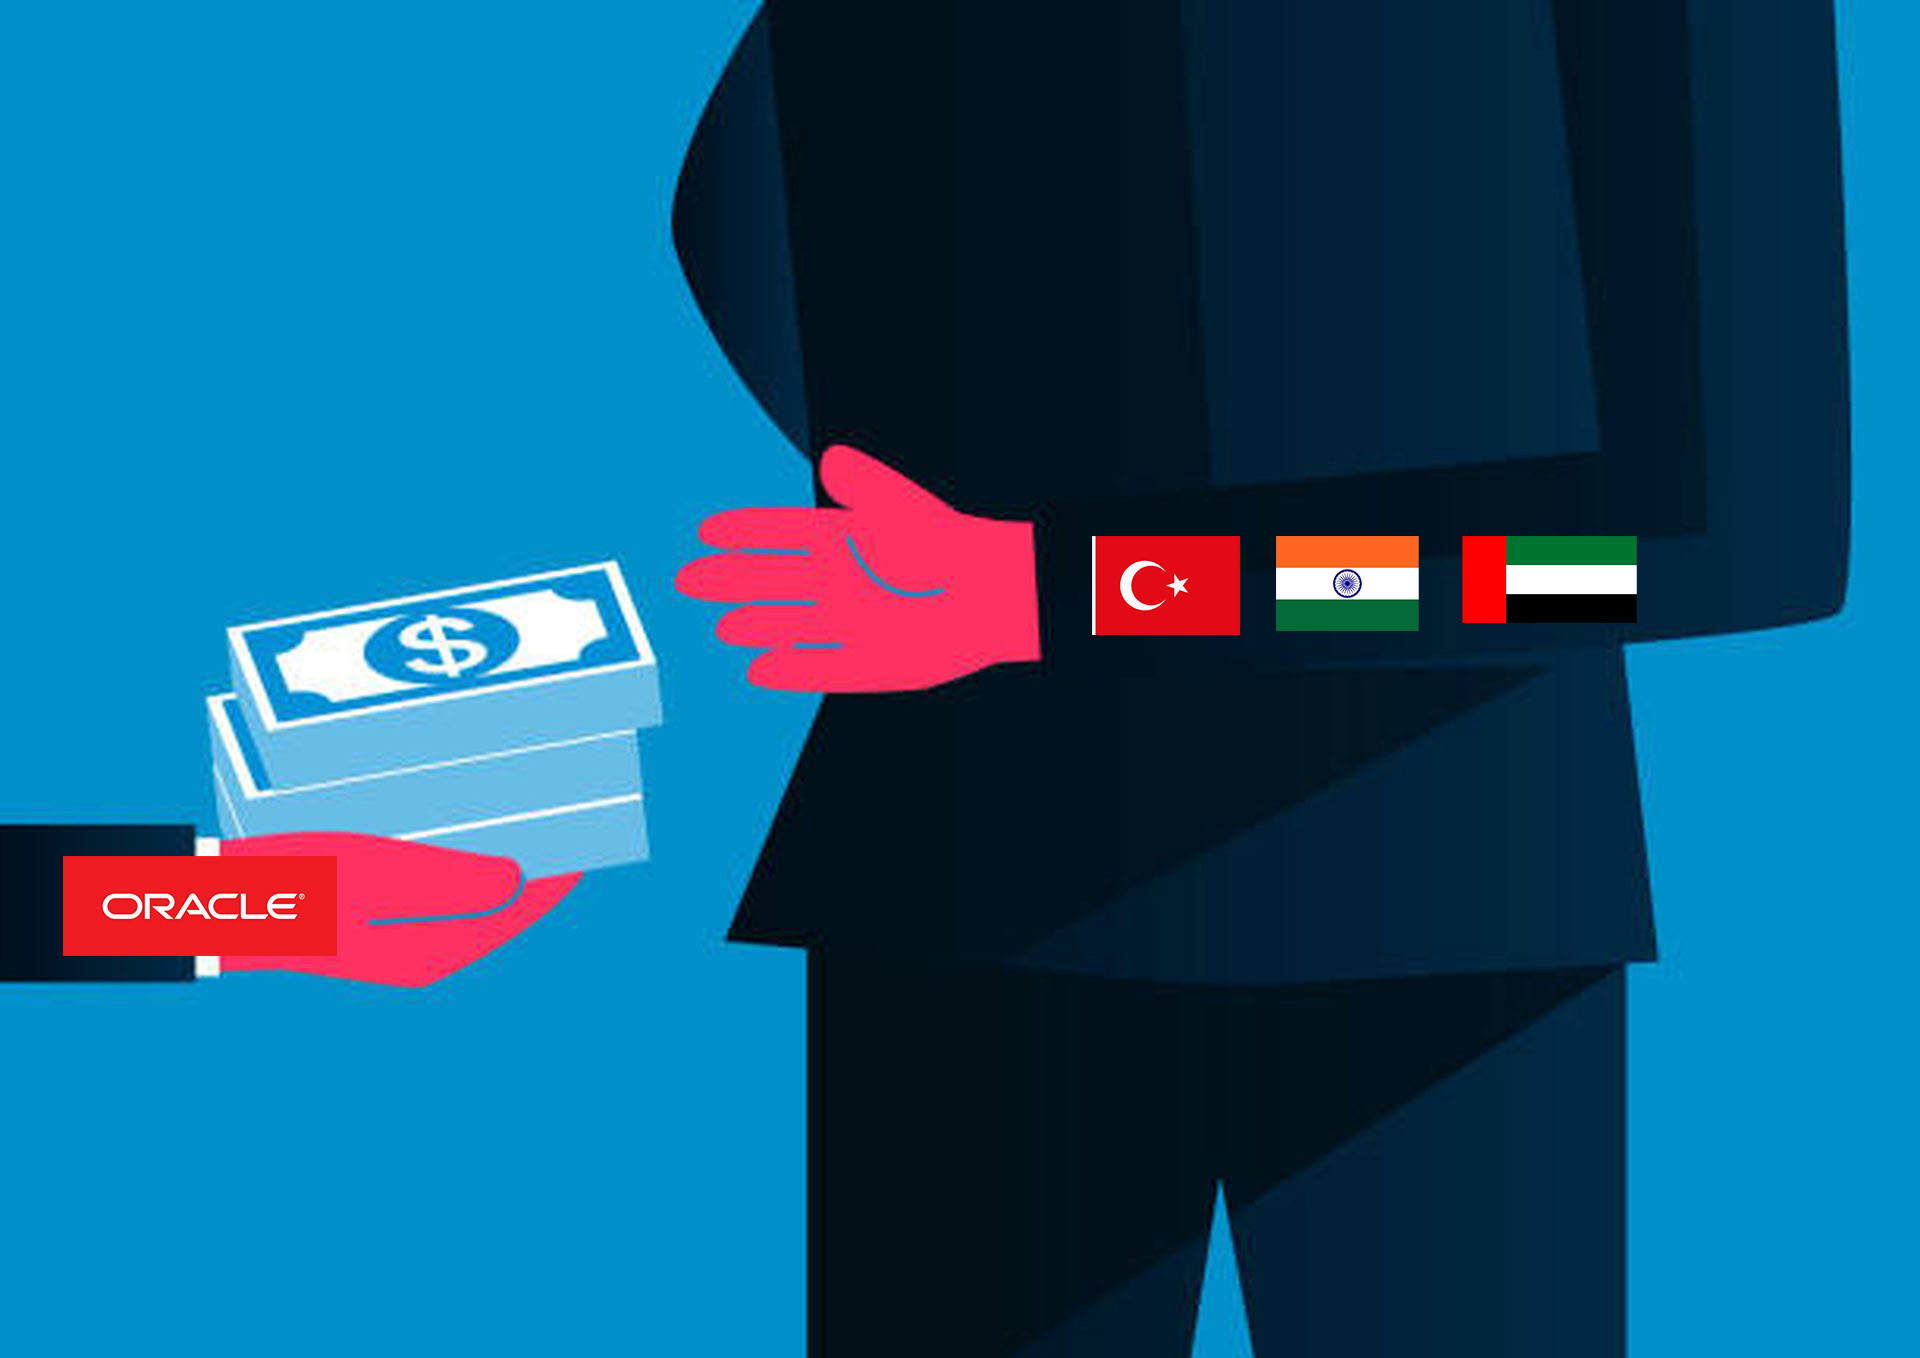 Affaire de corruption d’Oracle : la SEC inflige une amende de près de 23 millions de dollars à Oracle pour corruption présumée en Inde, en Turquie et aux Émirats arabes unis